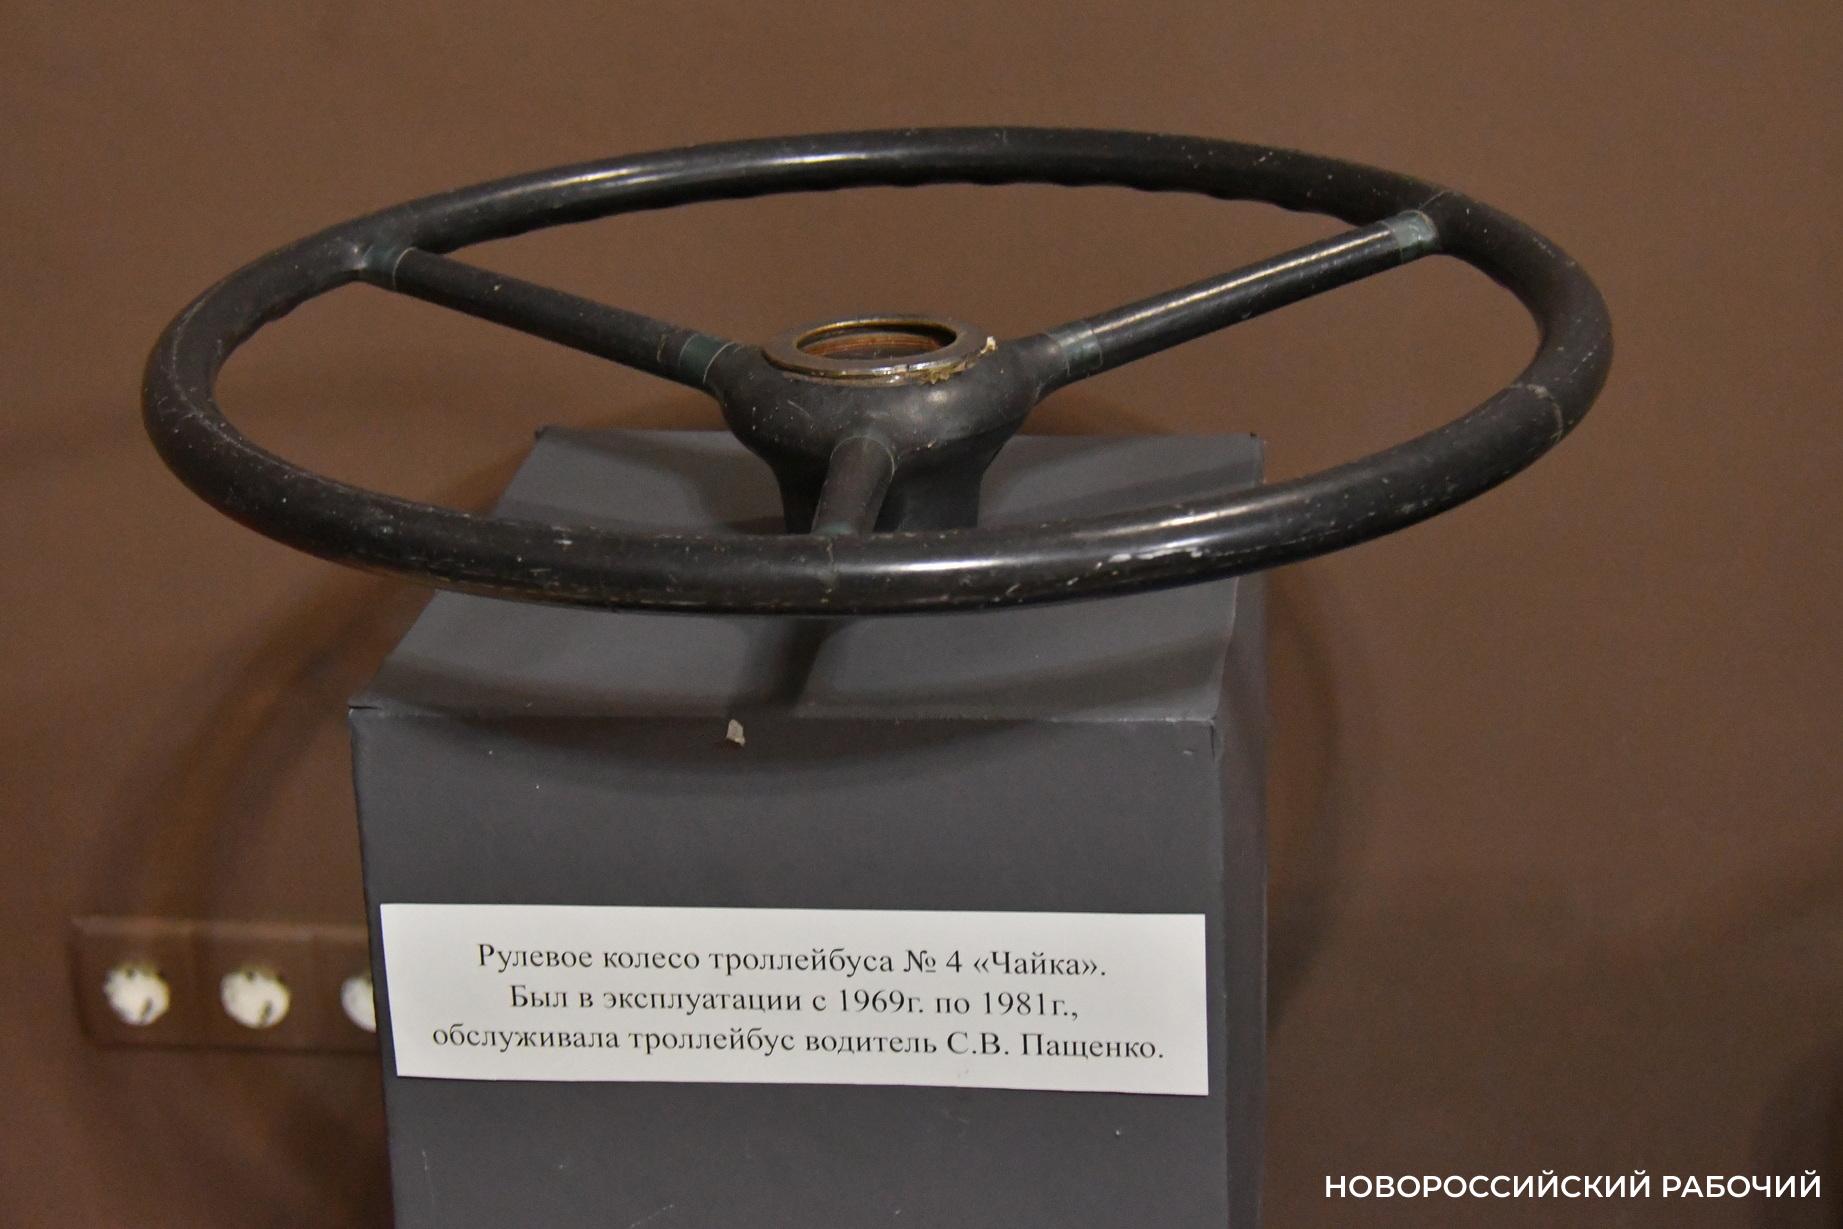 Как троллейбусный билетик в Новороссийске стал музейной ценностью, а руль – украшением интерьера